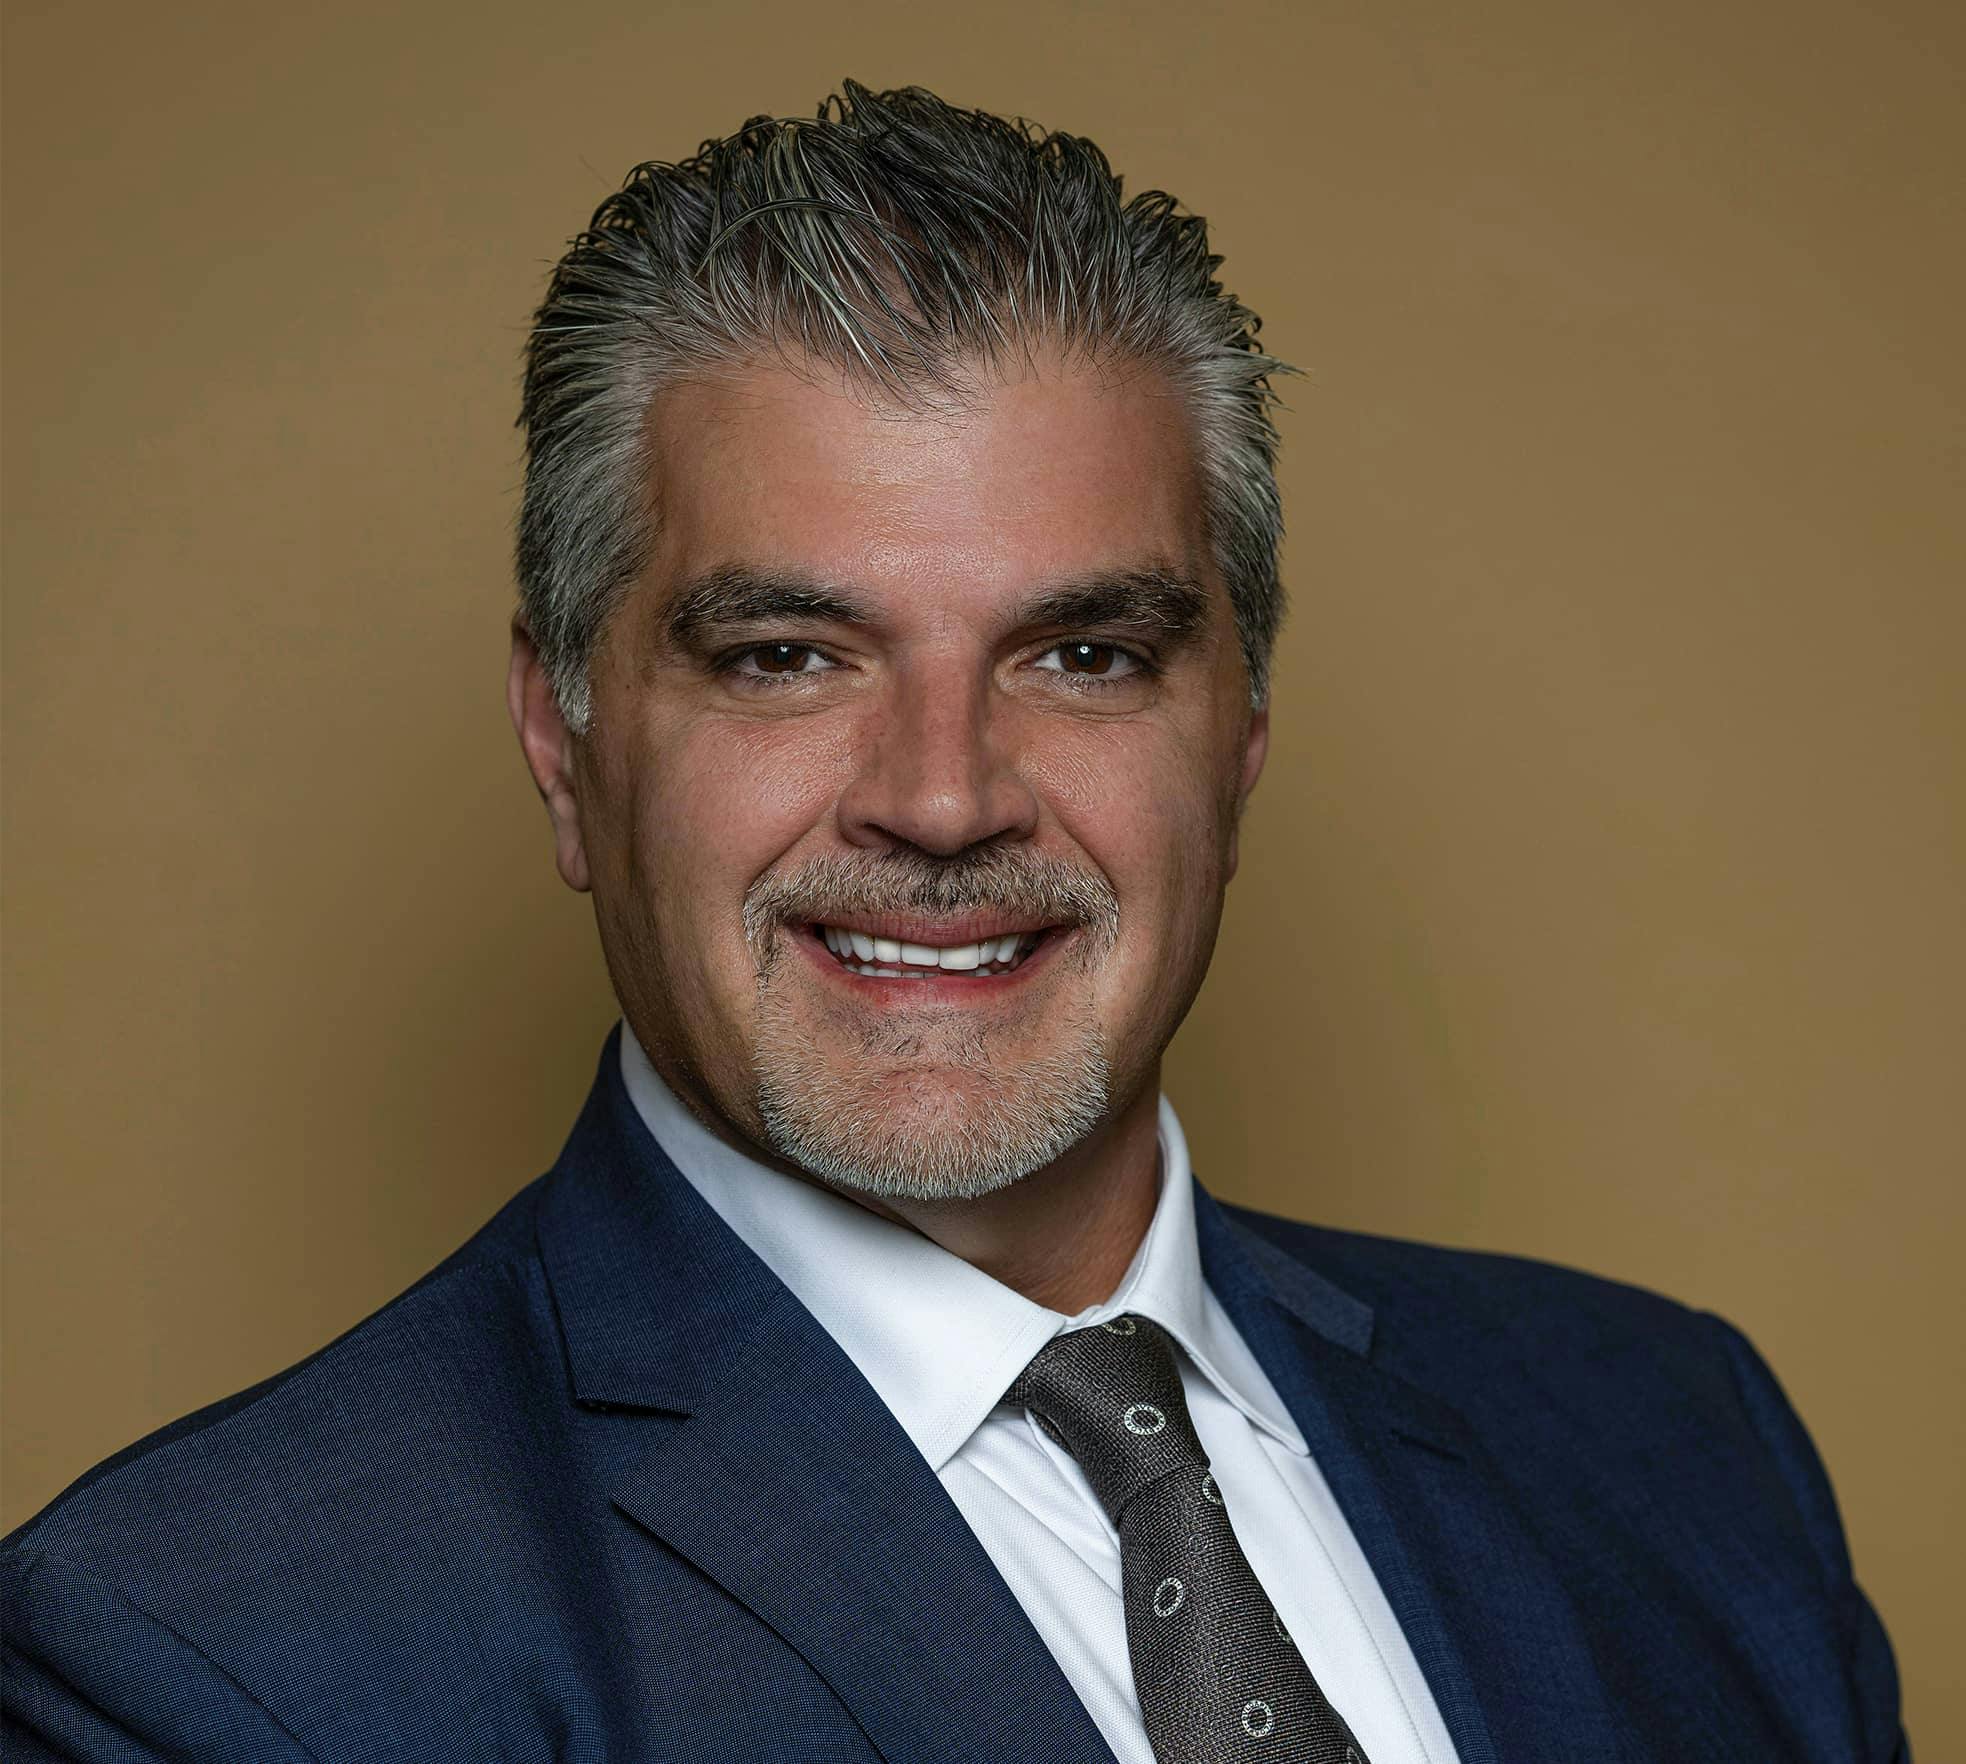 Dr. Steve Paragioudakis smiling in suit